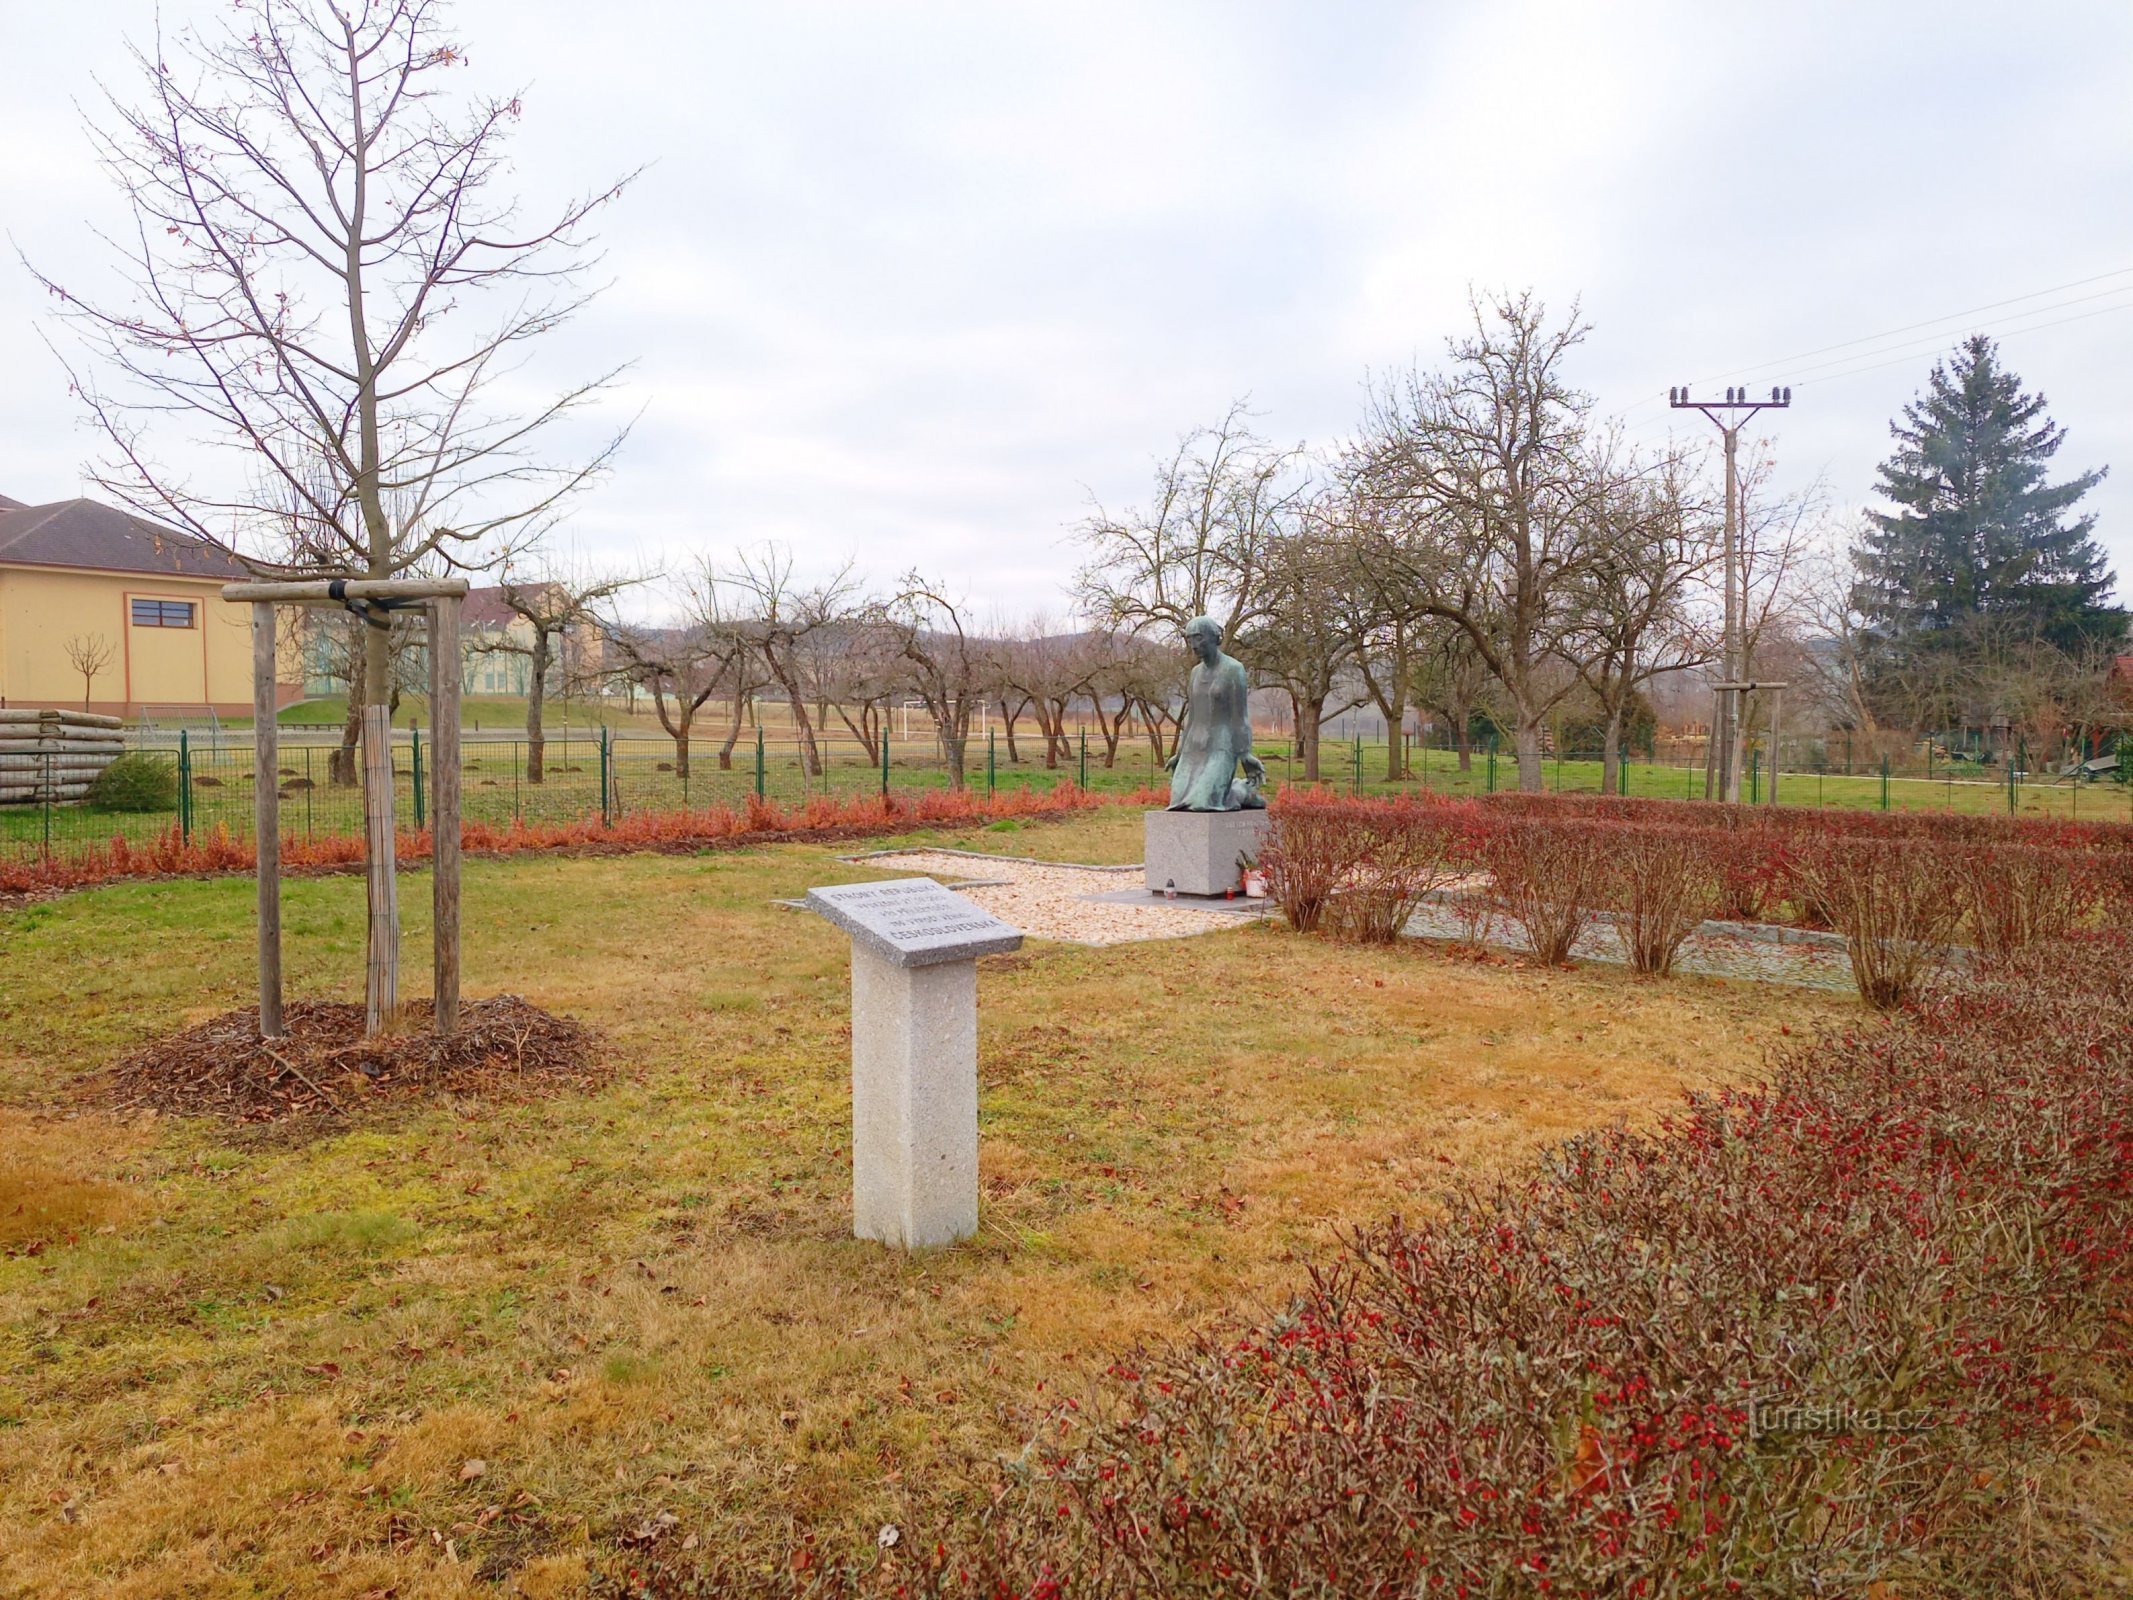 2. Monument for krigens ofre i Sedlec